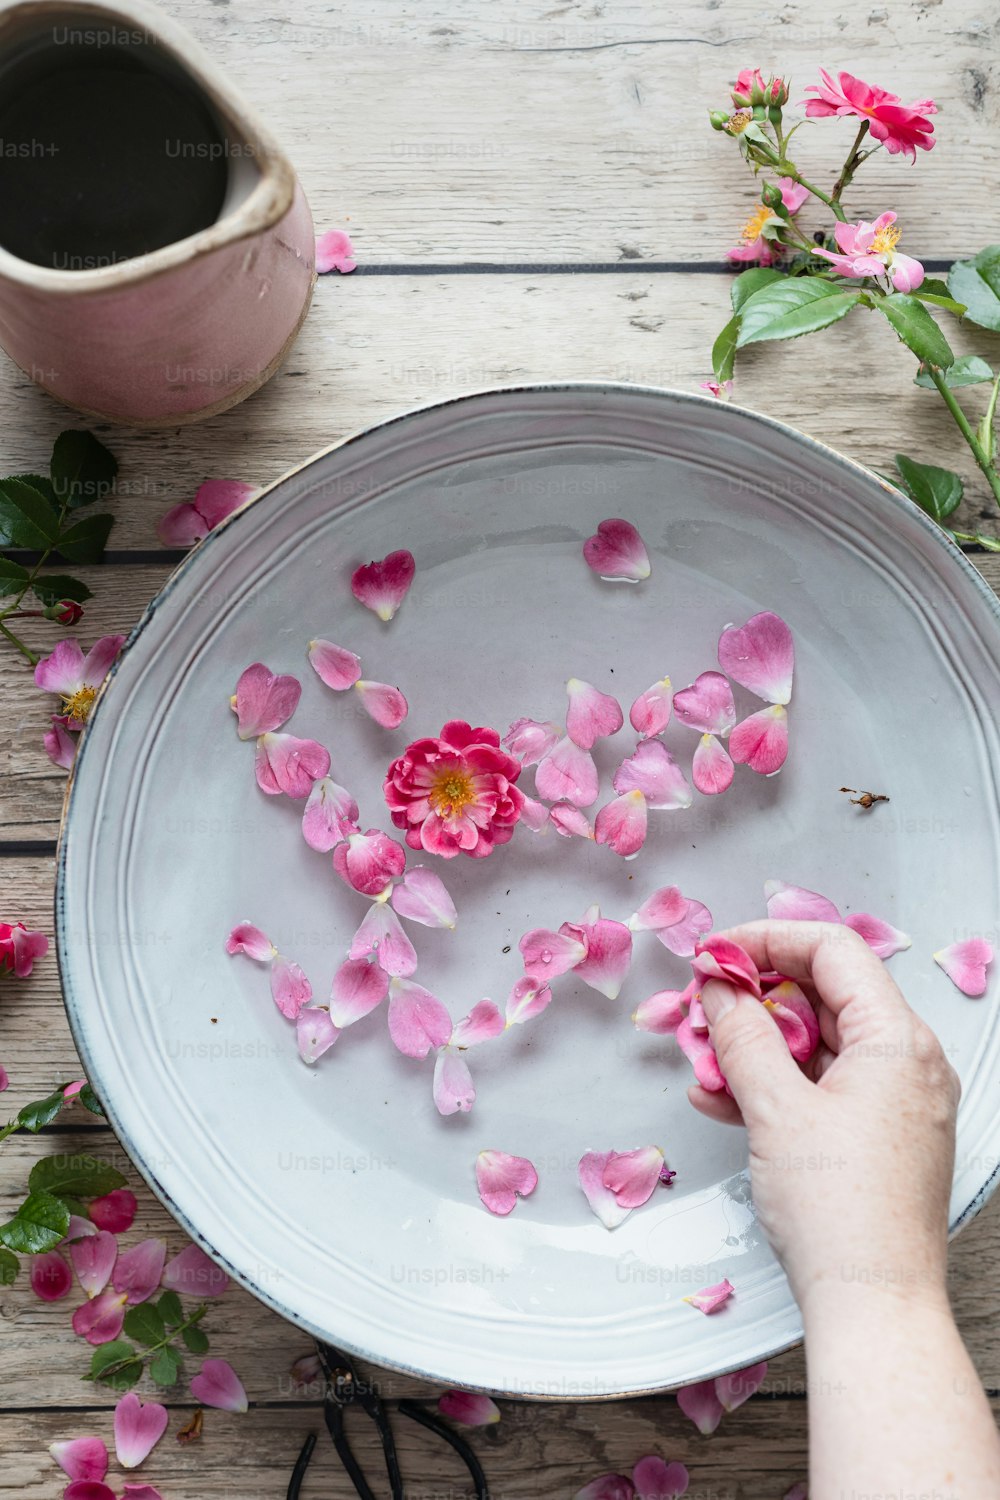 Una persona está arreglando flores rosadas en un plato blanco